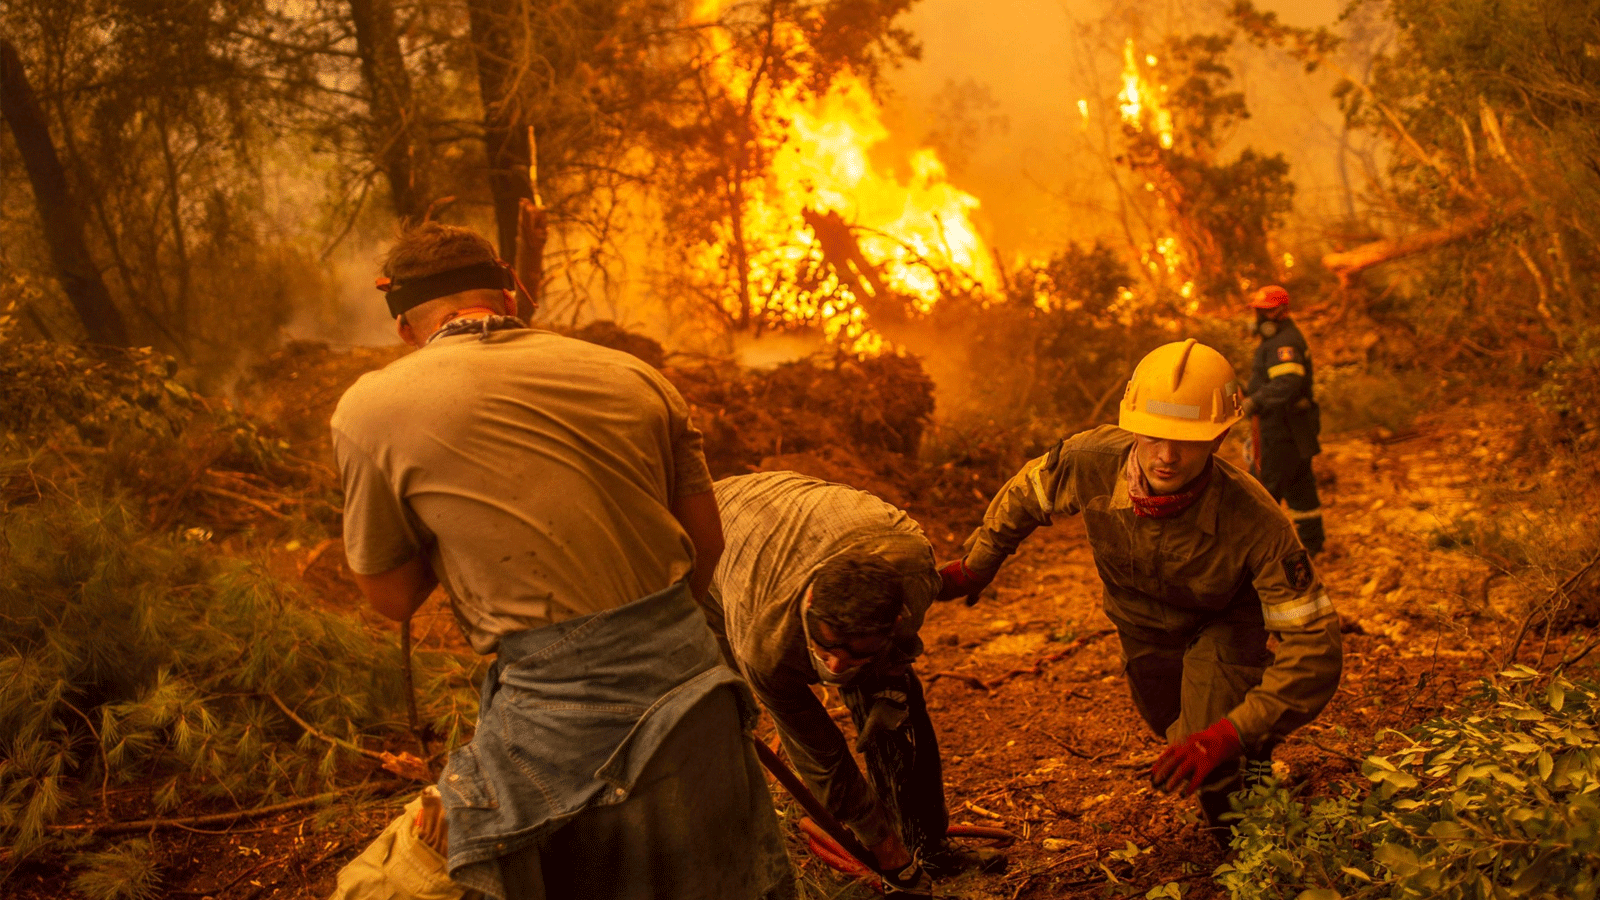 رجال الإطفاء والمتطوعون يستخدمون خرطوم مياه بالقرب من حريق محترق في محاولة لإخماد حريق في قرية غلاتسونا على جزيرة إيفيا (Euboea)، اليونان. 9 آب\أغسطس 2021